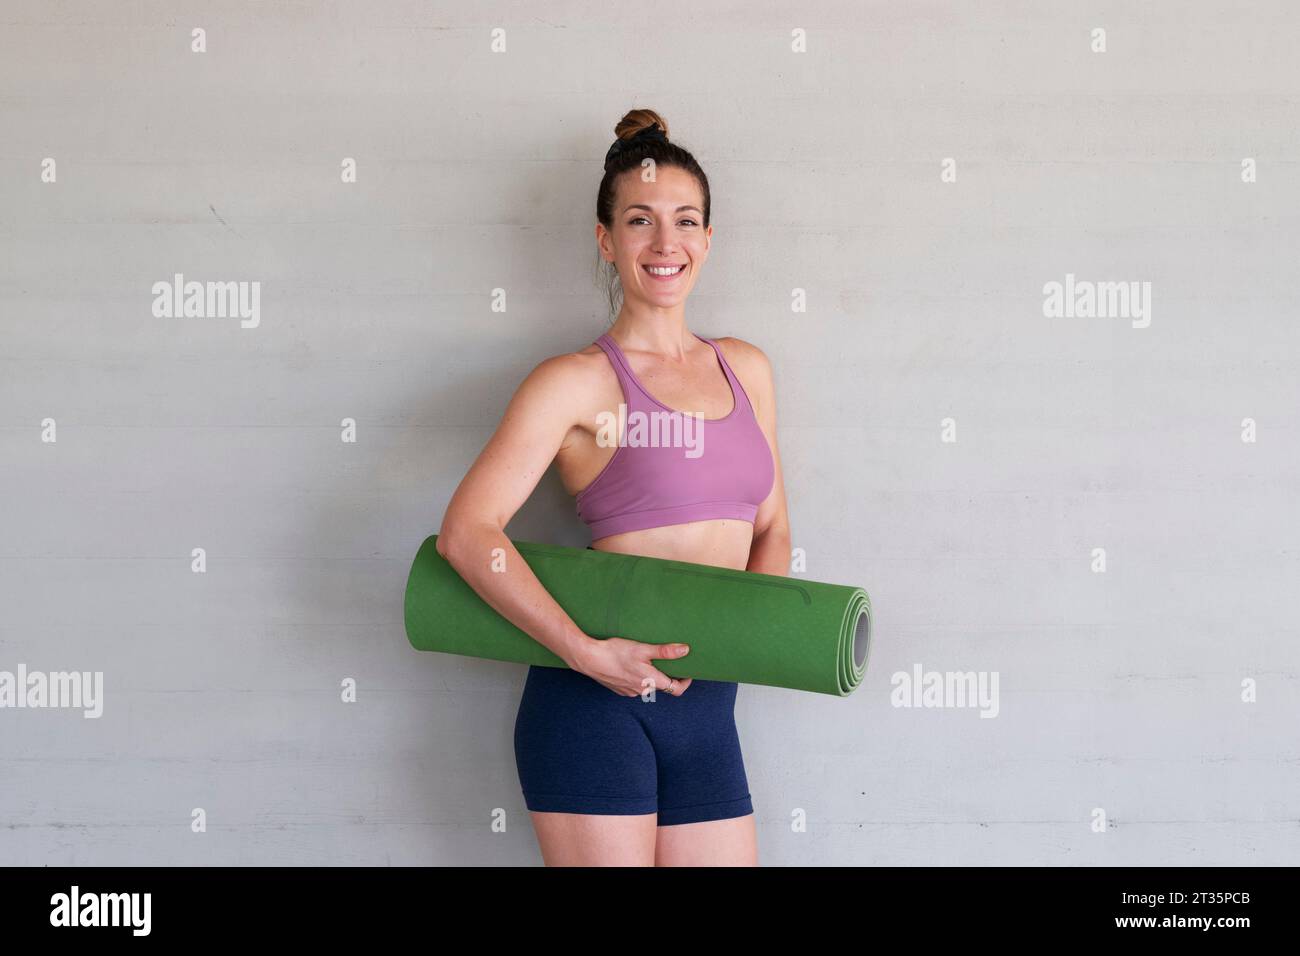 Lächelnde Frau, die eine Yogamatte hält, die vor einer Betonwand steht Stockfoto